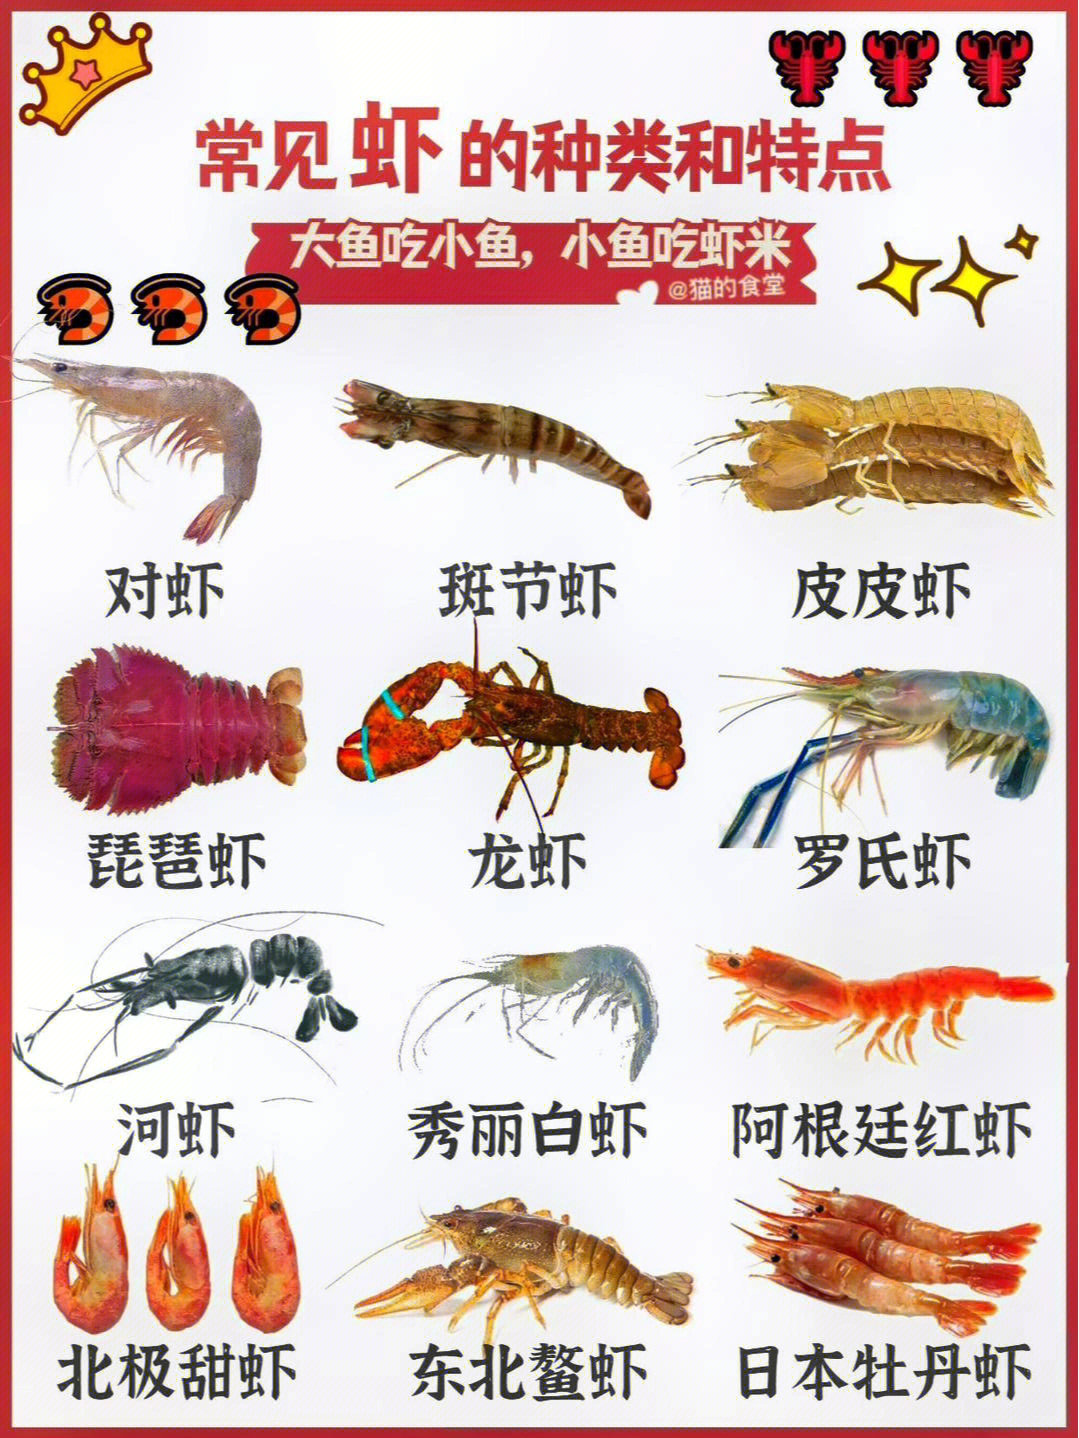 08科普常见虾的种类和特点60